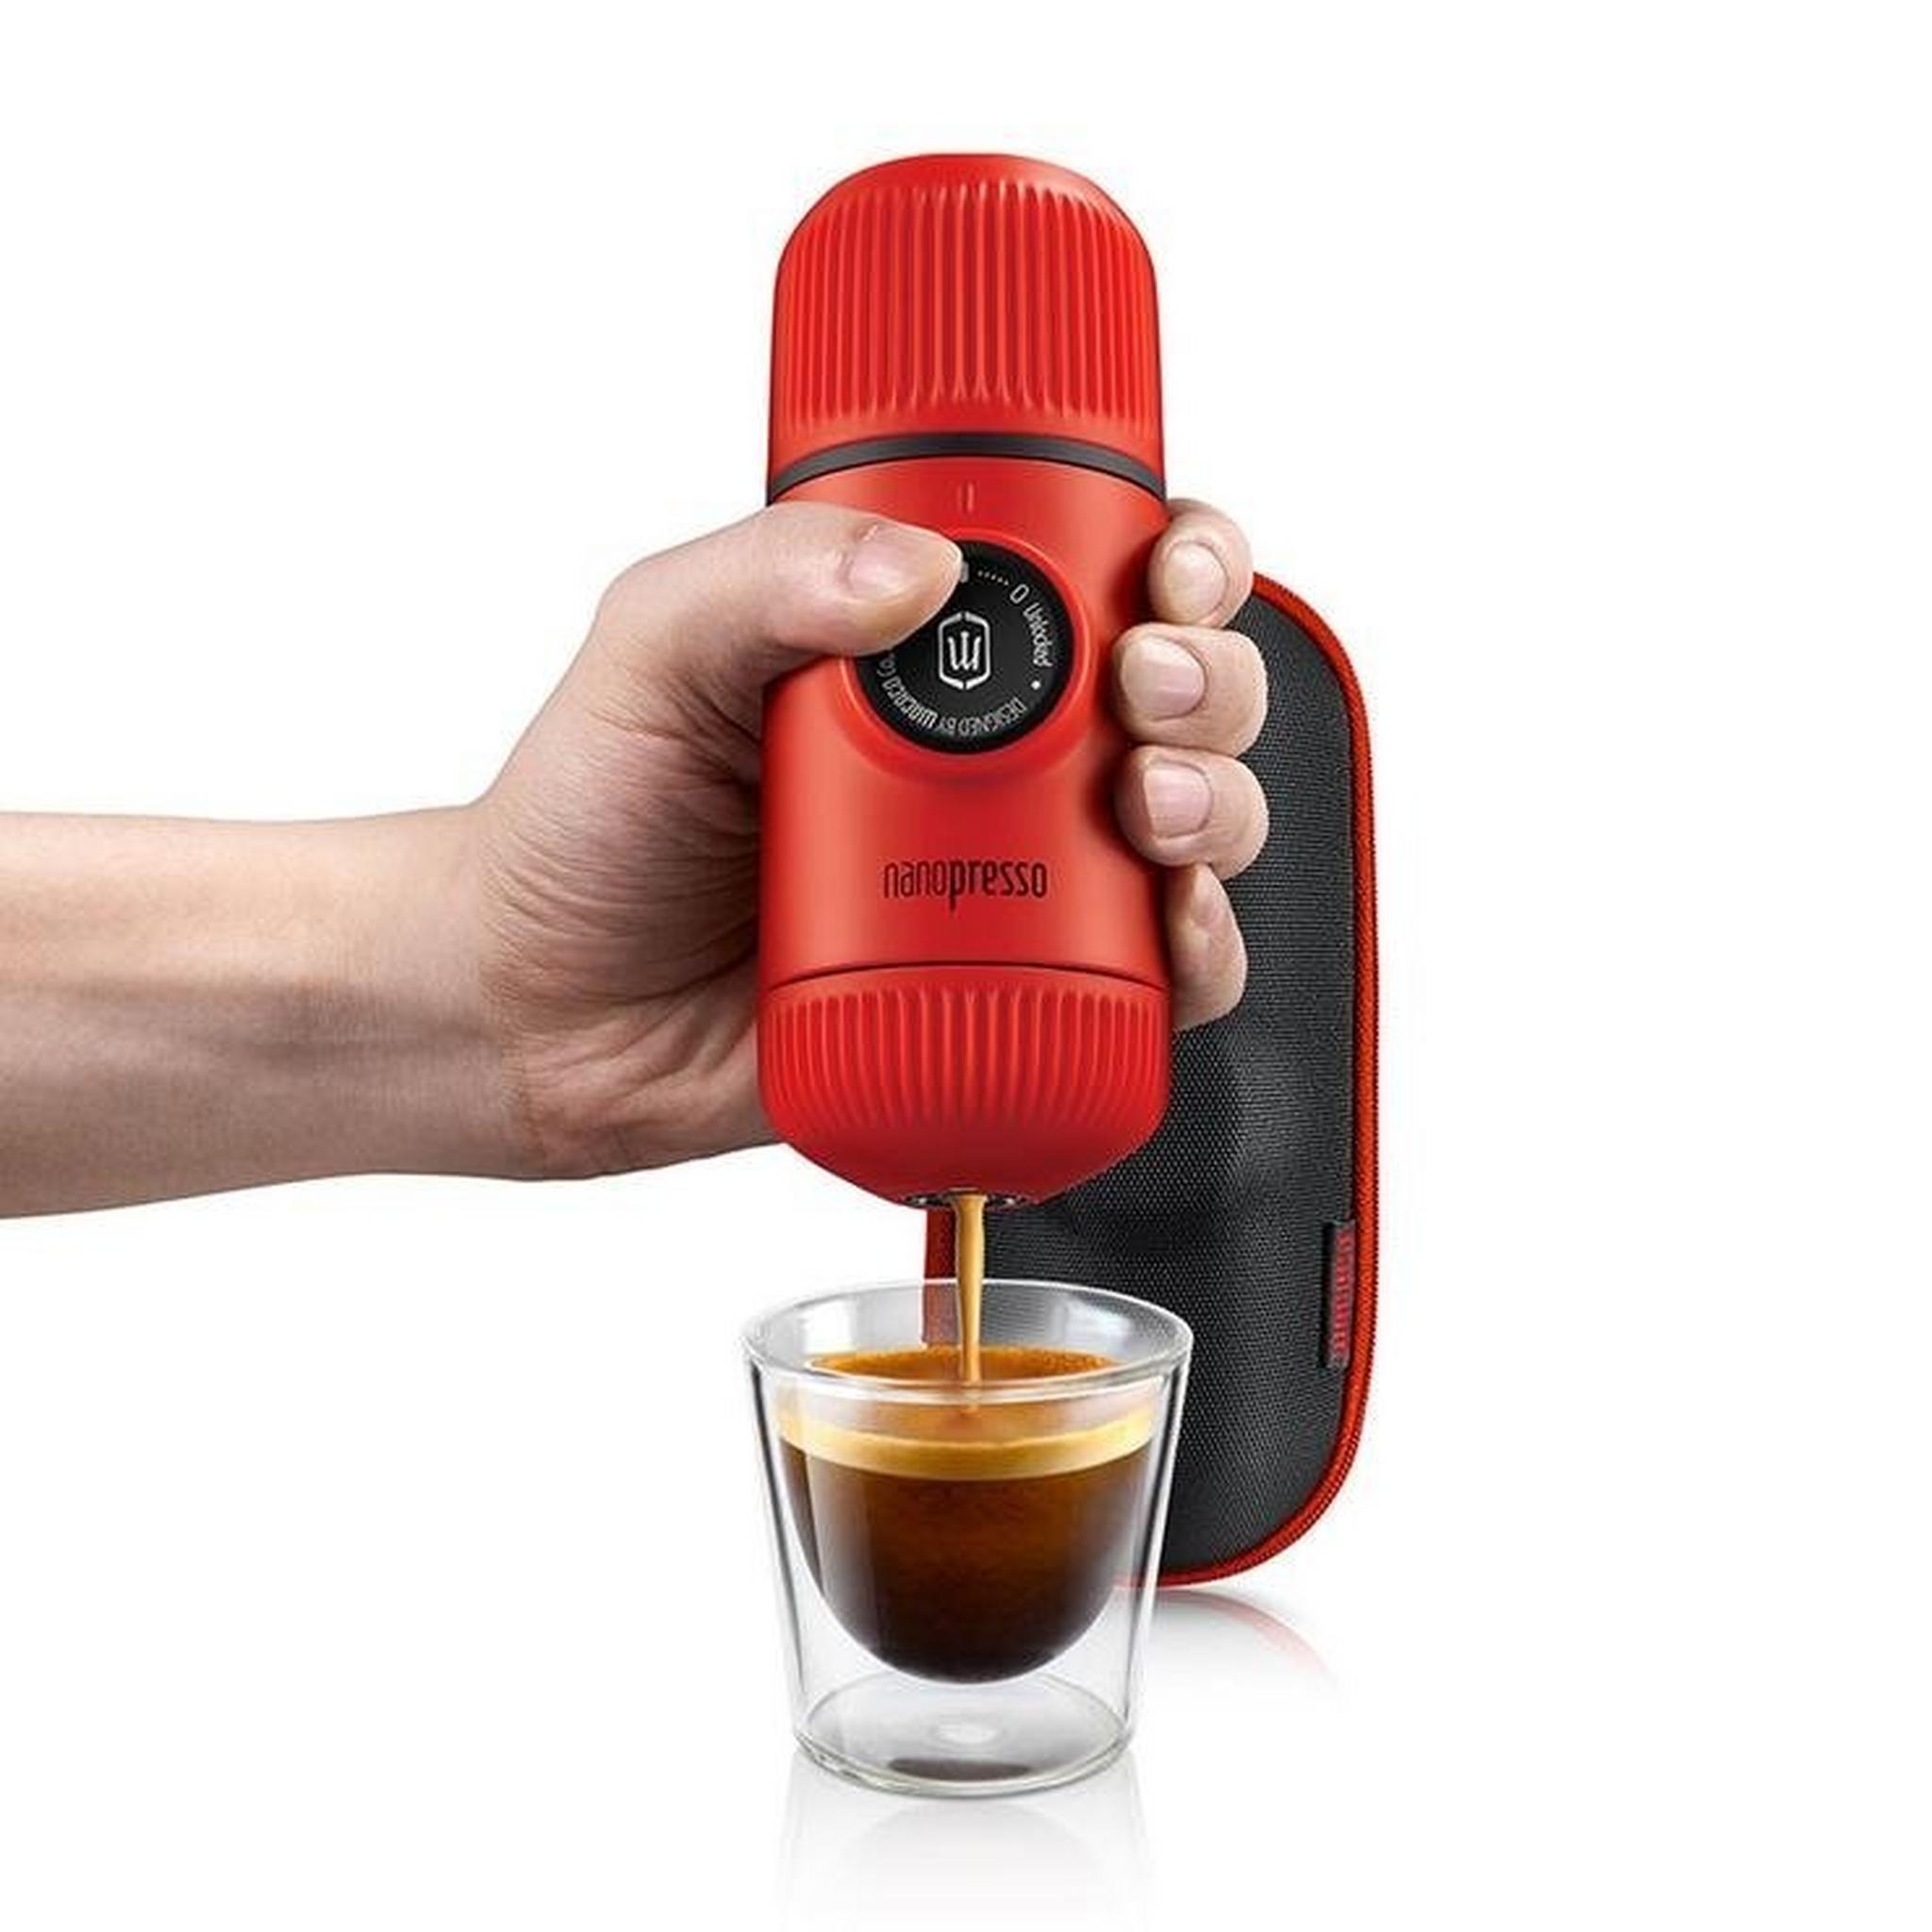 نانوبريسو آلة صنع القهوة مع غطاء من واكاكو- أحمر (WC-NANOP-ERED)